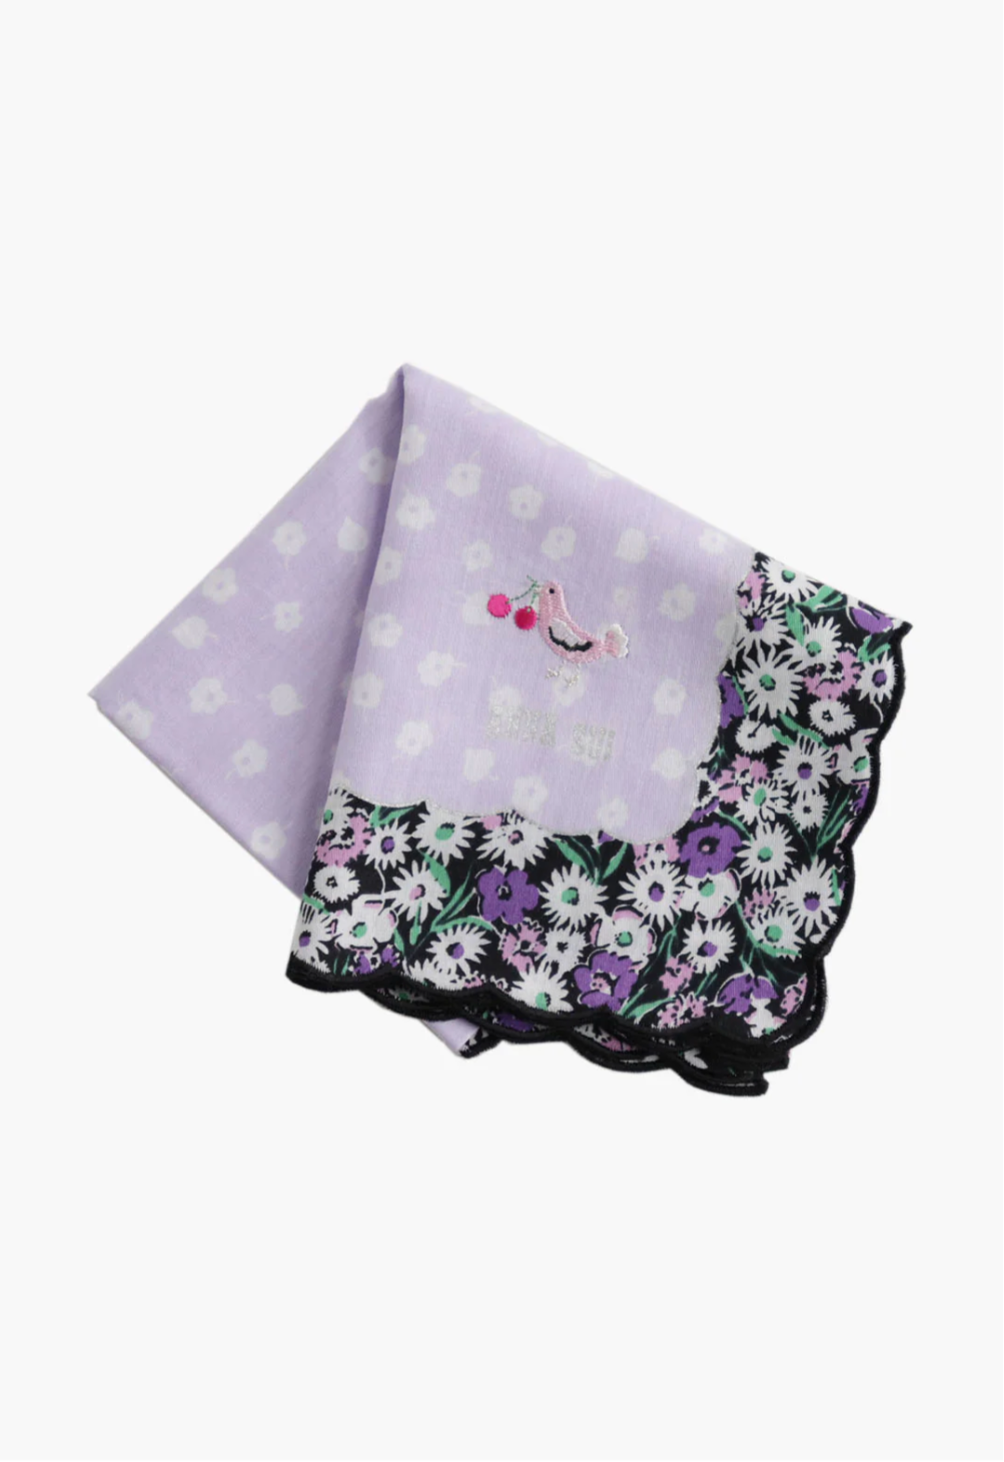 Birds/Berries light purple Handkerchief, Anna Sui's label under pink Bird/Berries, border with posies